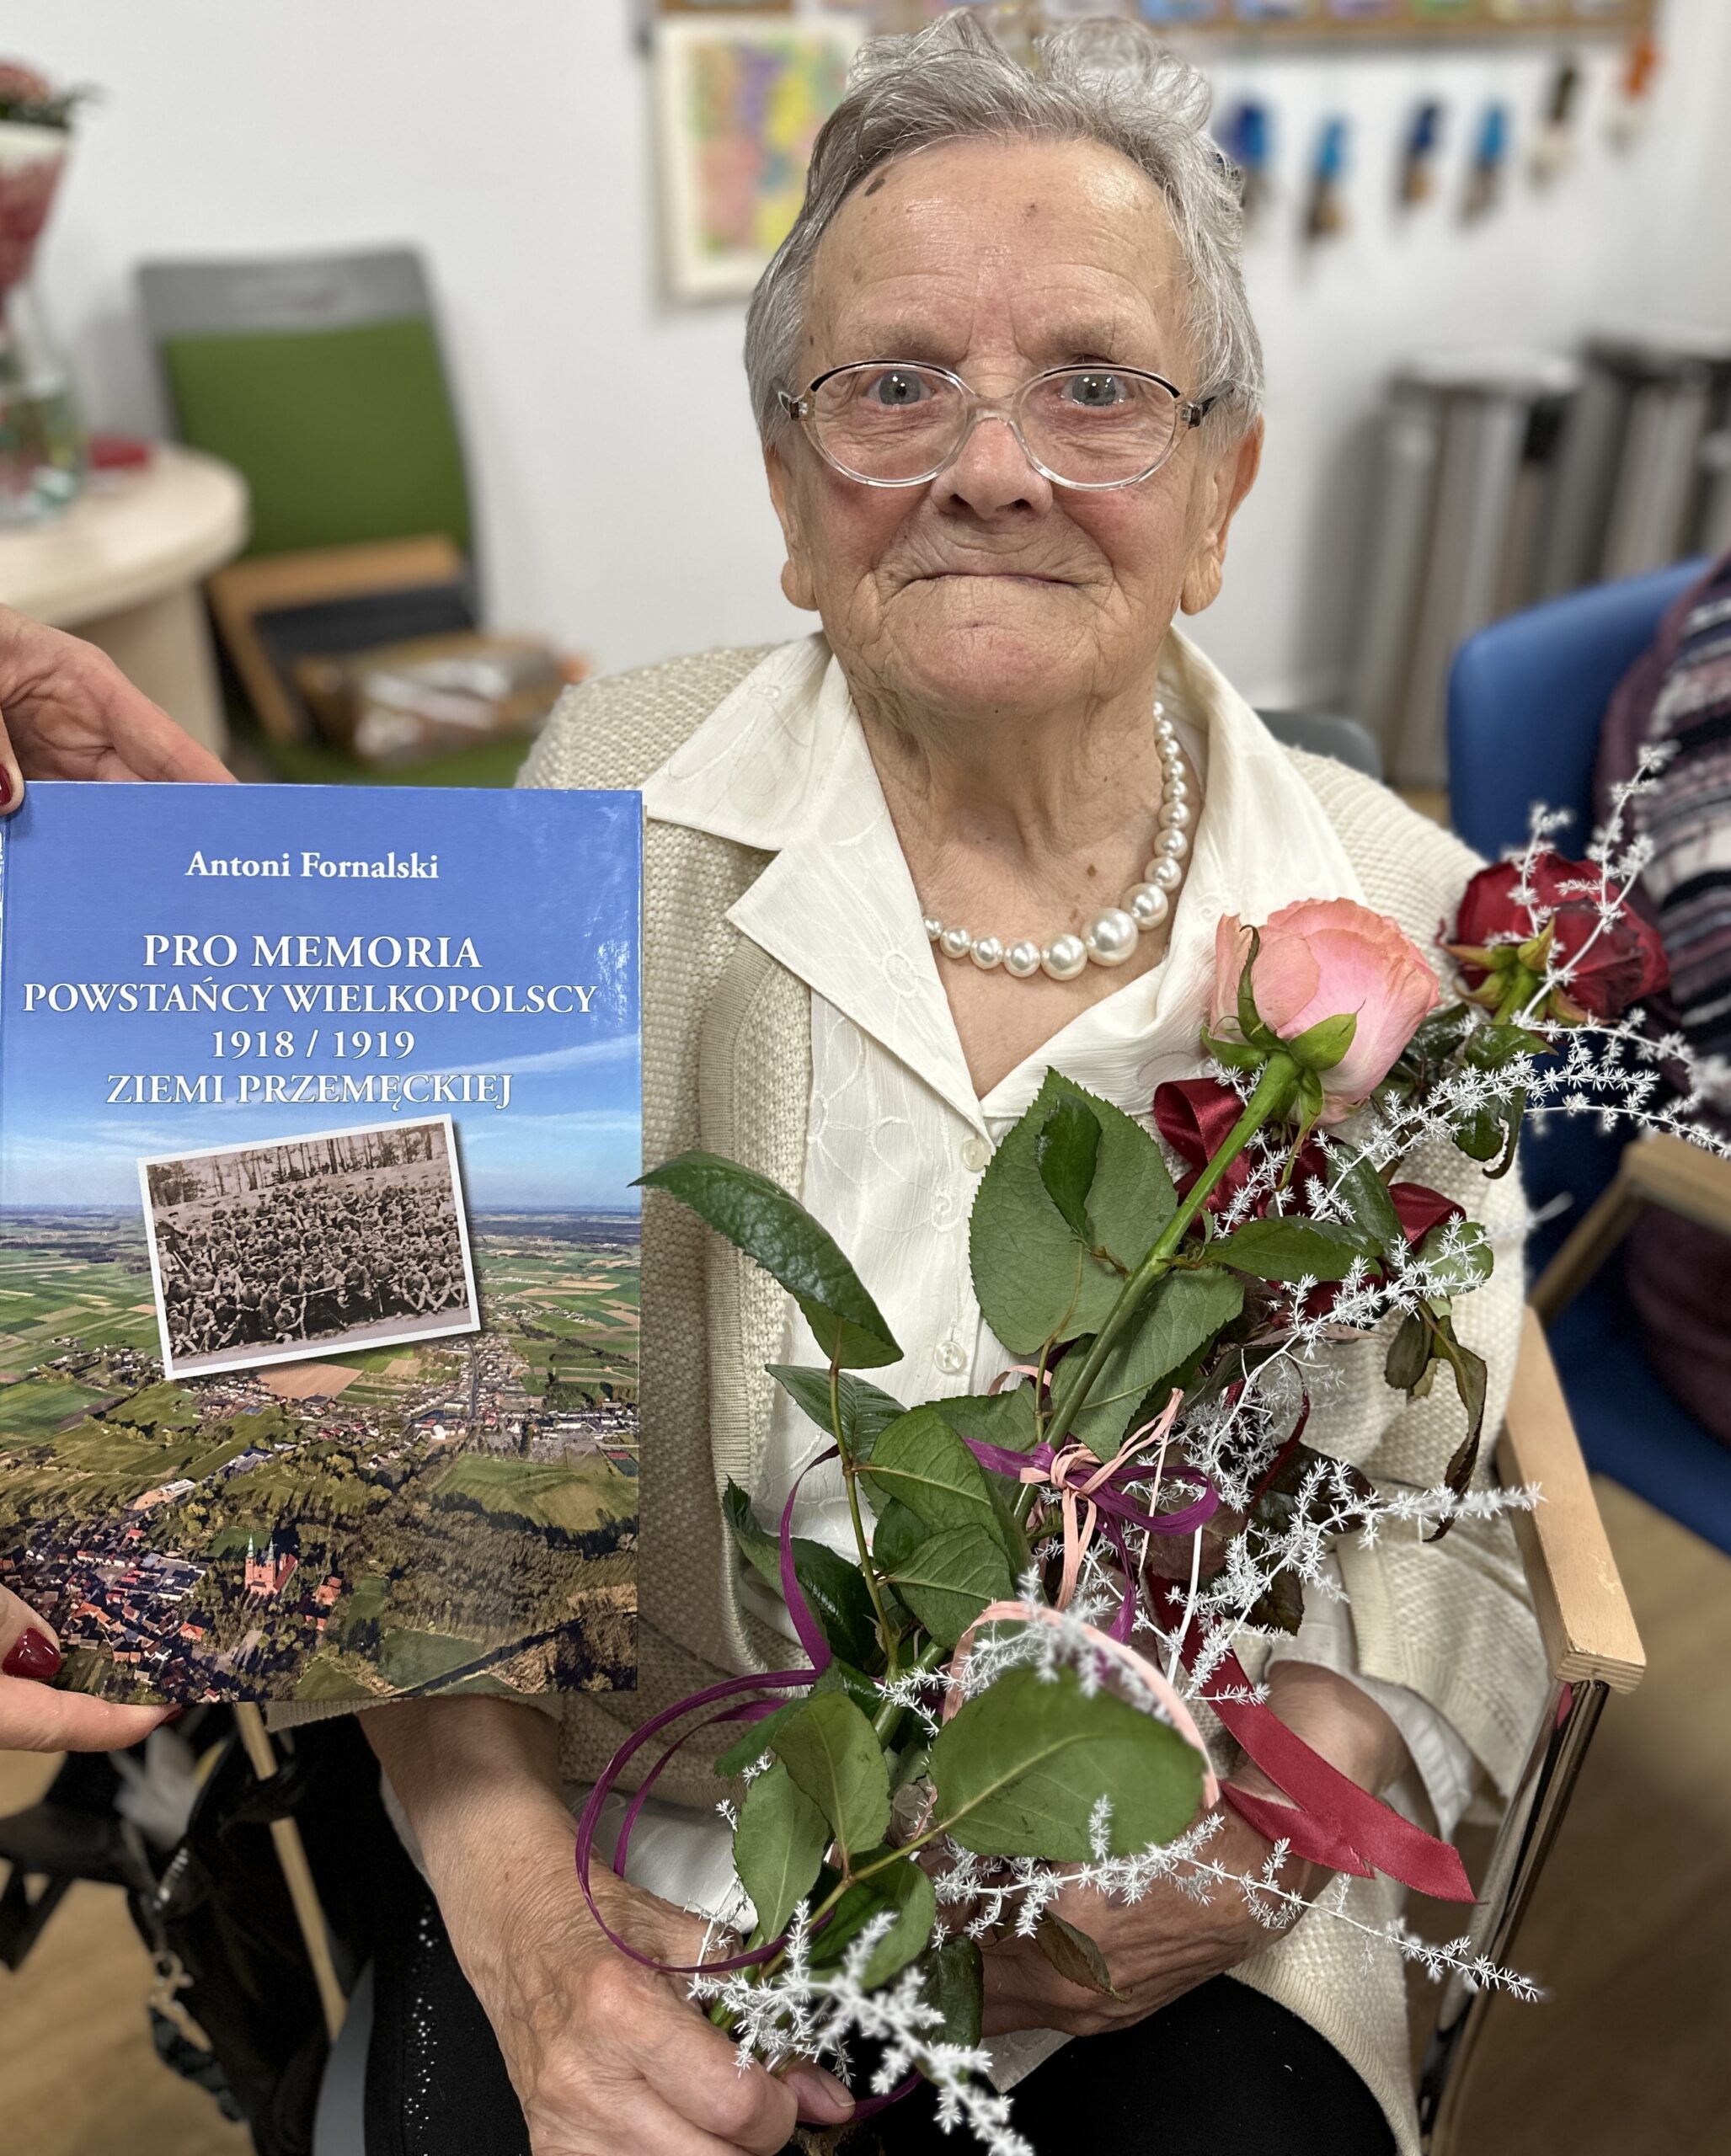 Zdjęcie przedstawia Panią Irenę Wawrzyniak trzymającą róże. Na obrazku widnieje również książka autorstwa Antoniego Fornalskiego, którą otrzymała Pani Irena.